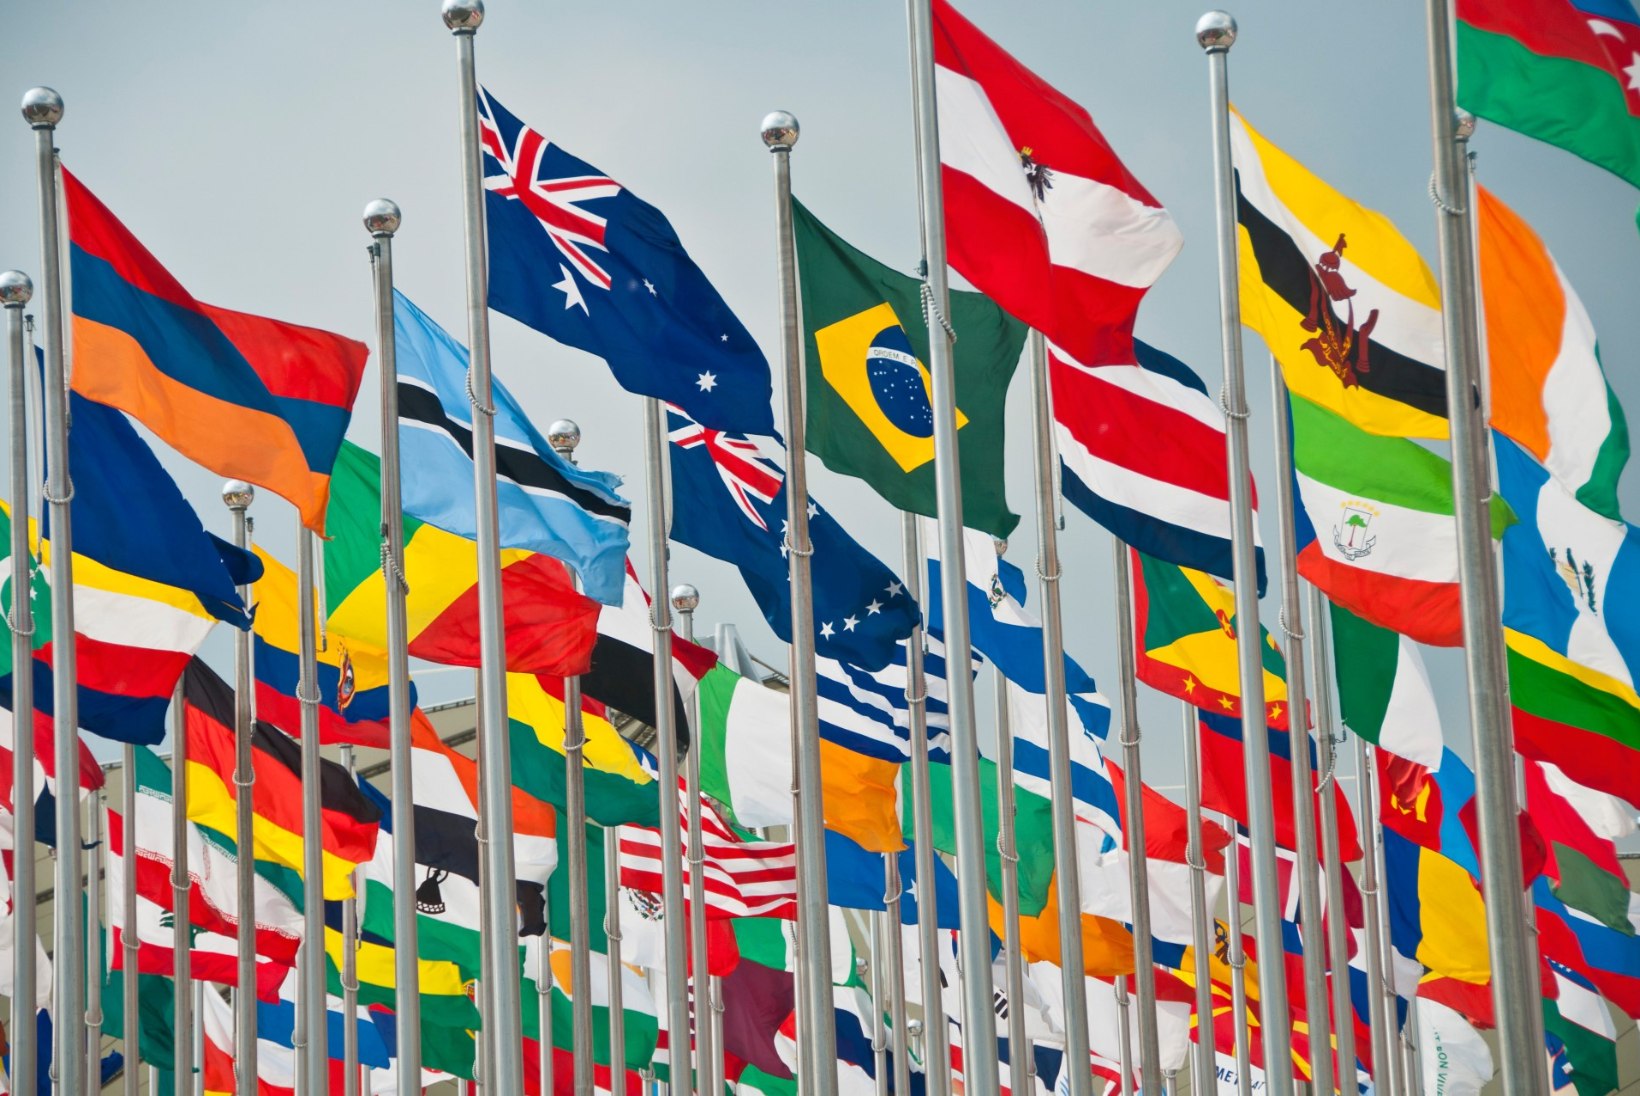 TUULE KÄES LEHVIV ERILINE KANGAS: maailma riigilippude kõige-kõige!